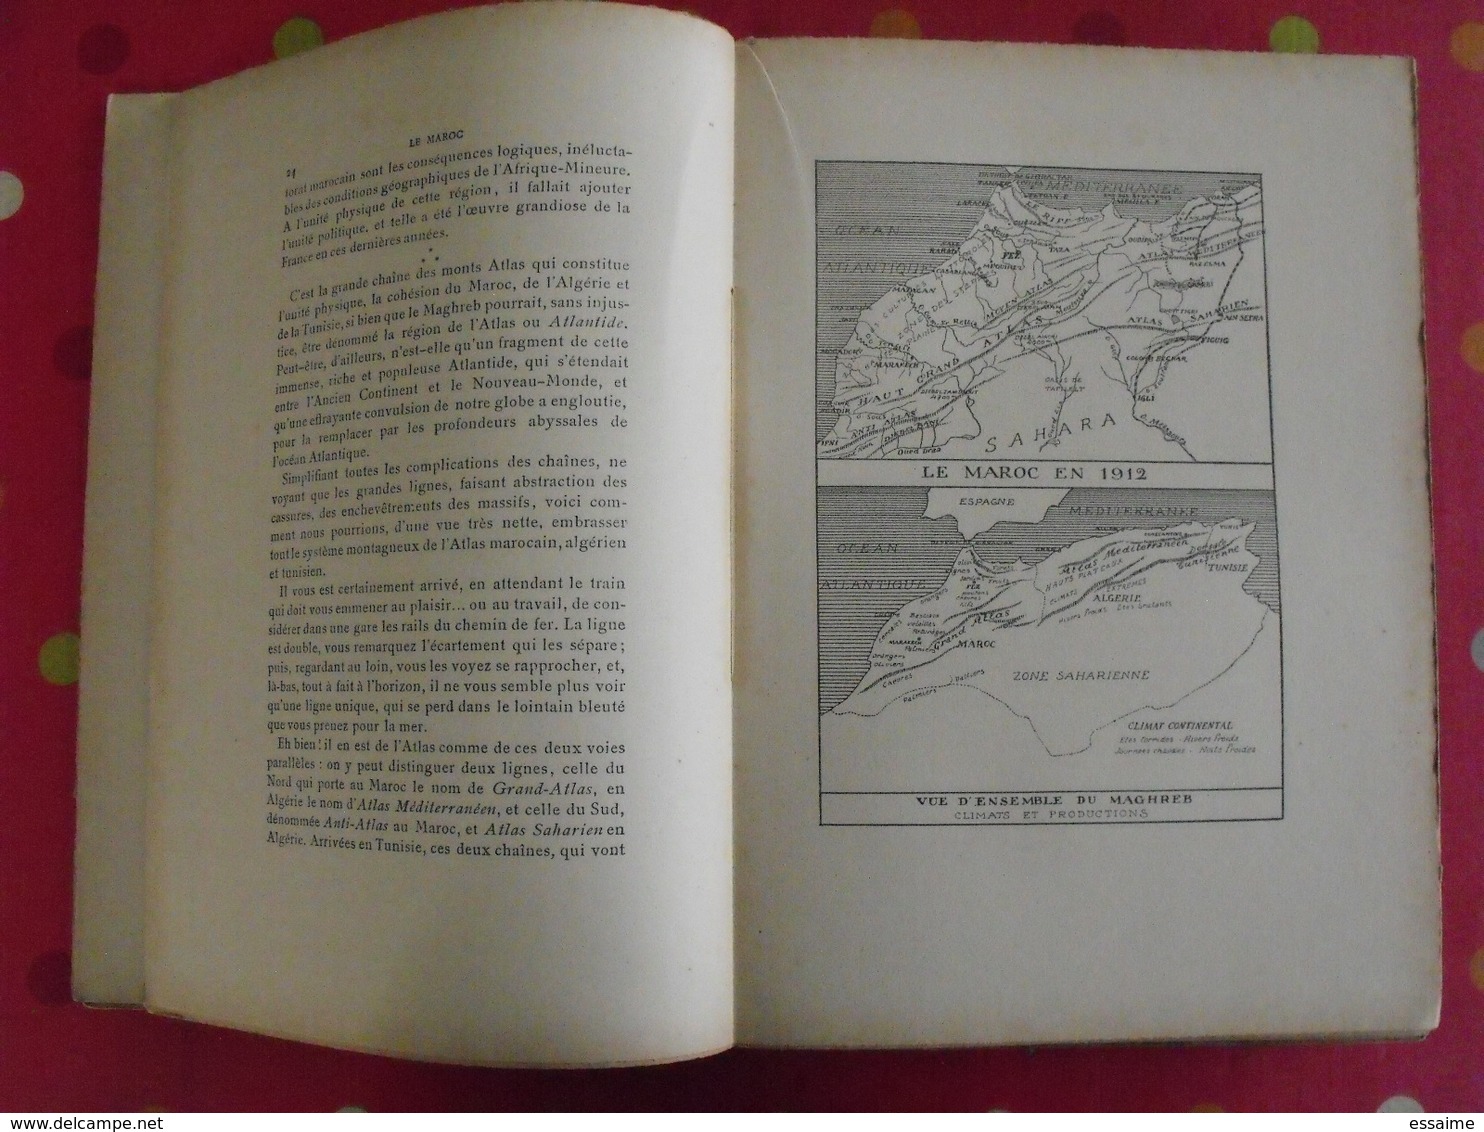 Le Maroc, Un Empire Qui Se Réveille Par Gabriel Galland. Librairie Nationale D'éducation Et De Récréation. Sd (1912) - Ohne Zuordnung